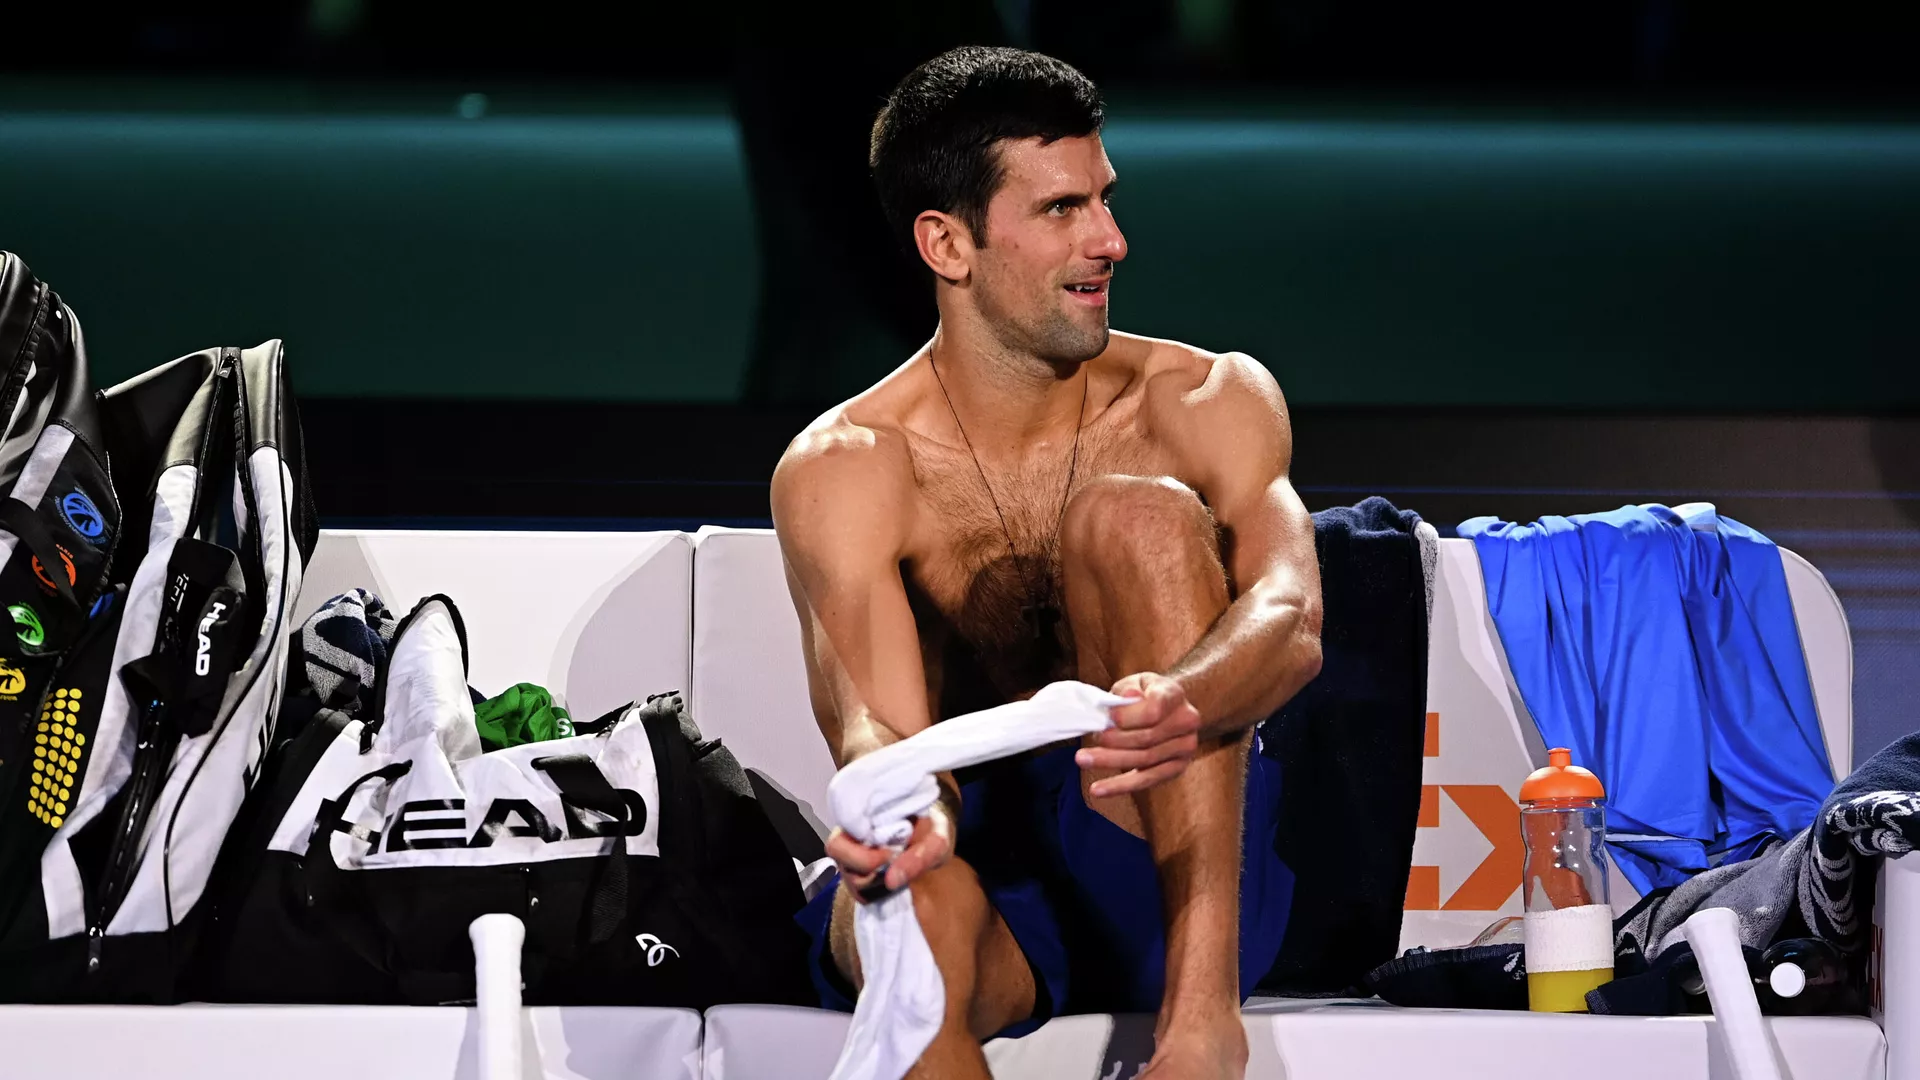  Al tenista serbio Djokovic se le niega la entrada a Estados Unidos debido a las regulaciones de COVID